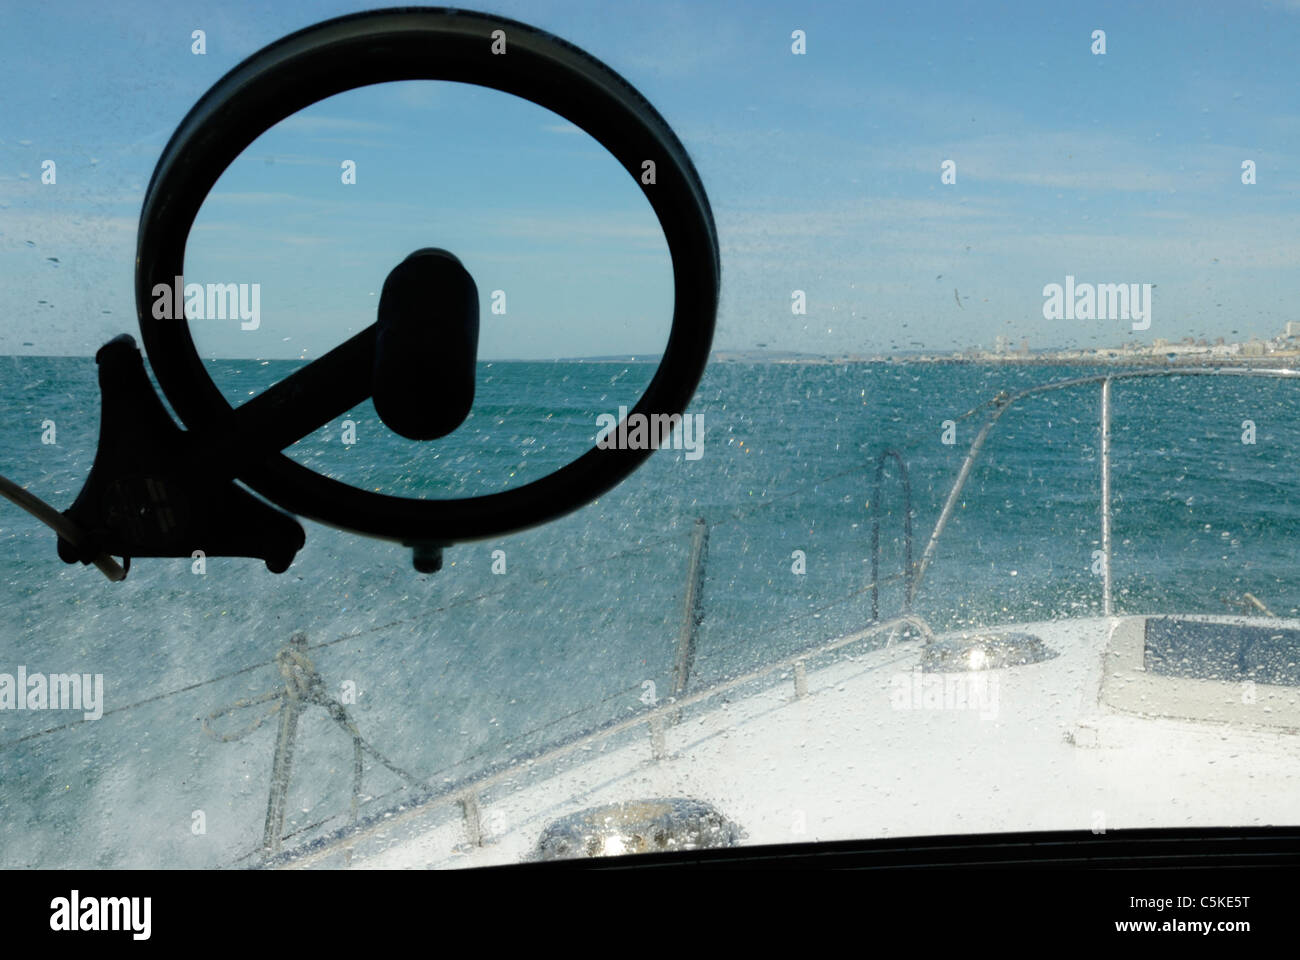 Eine Kent Ansicht Vollbild, rotierende Boot-Windschutzscheibe, die größere Sichtbarkeit bei rauer See ermöglicht. Stockfoto